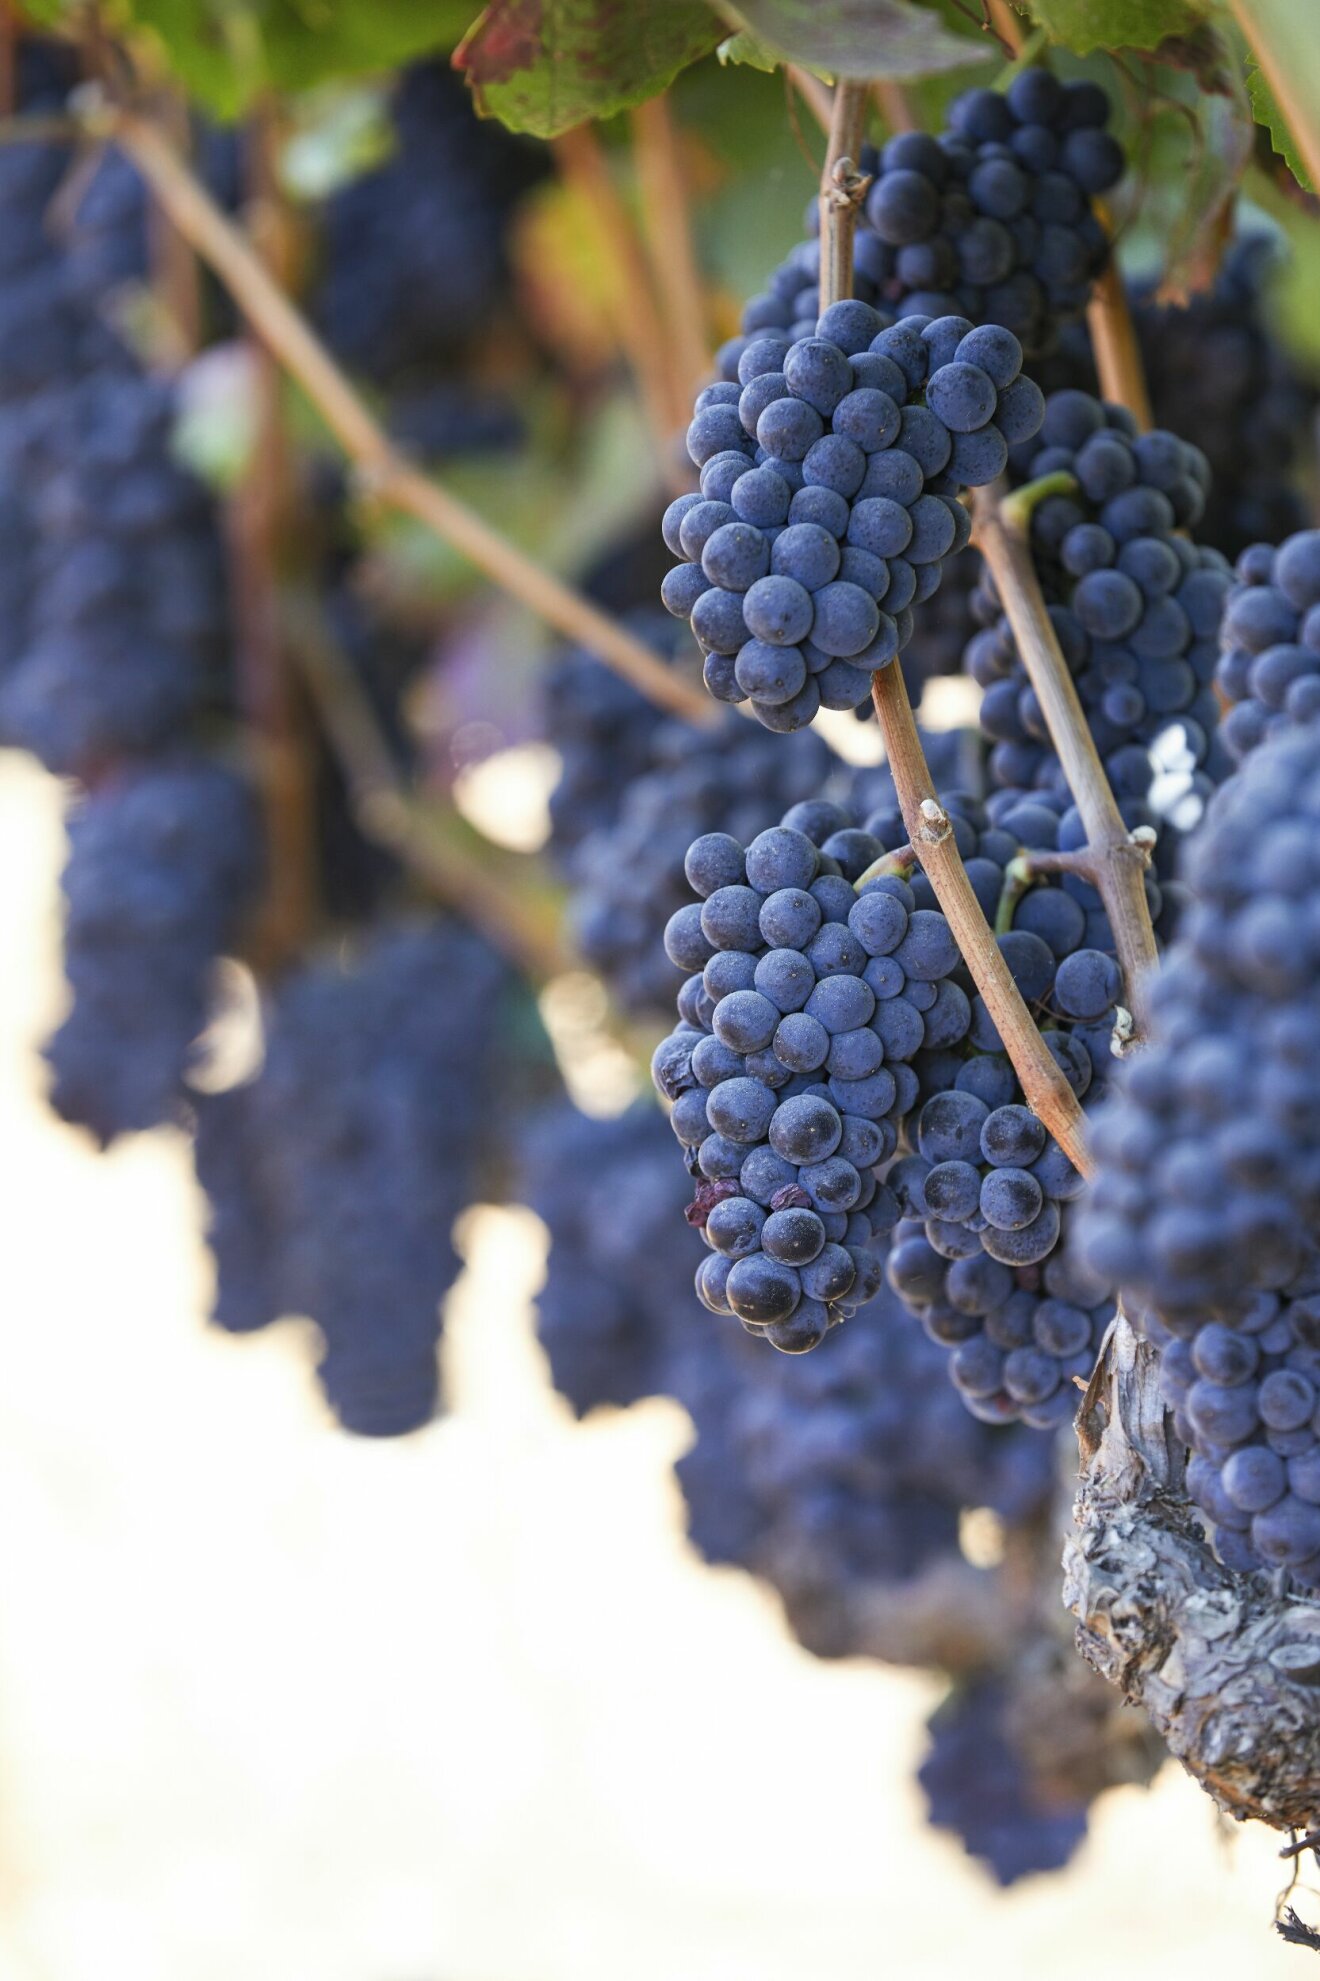 Av årets allra första skörd släpps de allra första vinerna: primeurviner, där beaujolais nouveau är de mest populära.